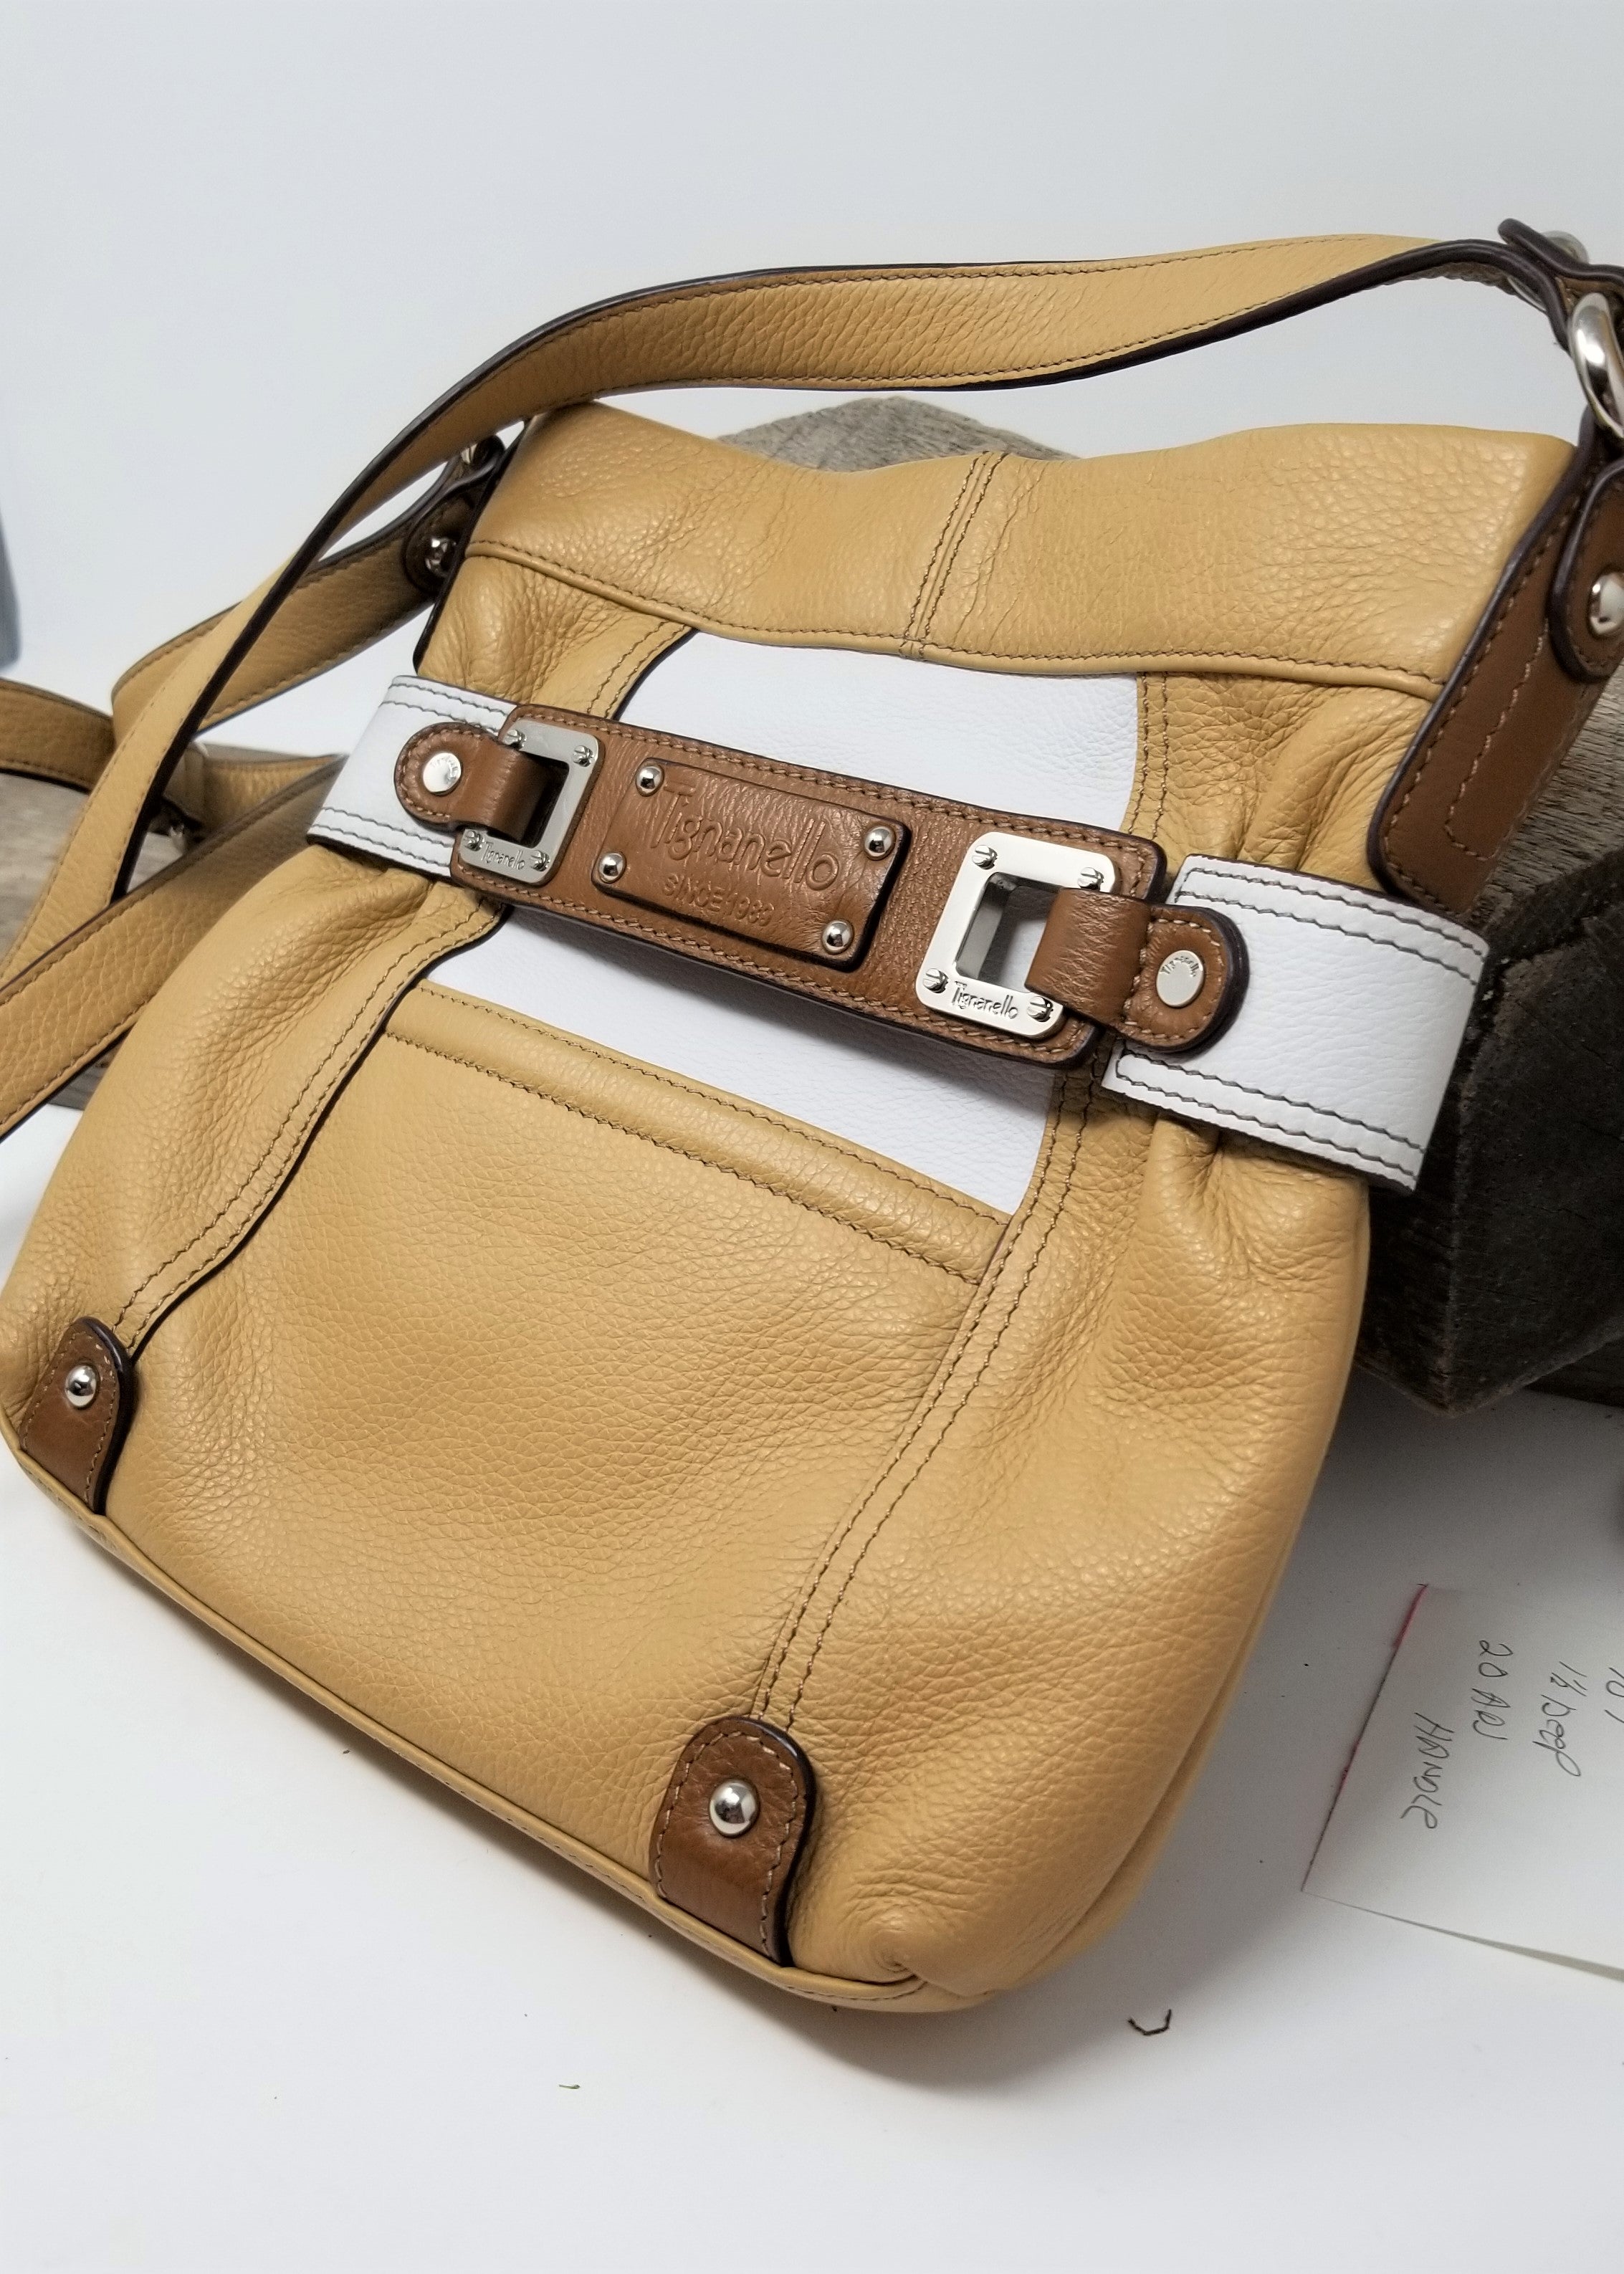 Tignanello Leather Bucket Bags | Mercari